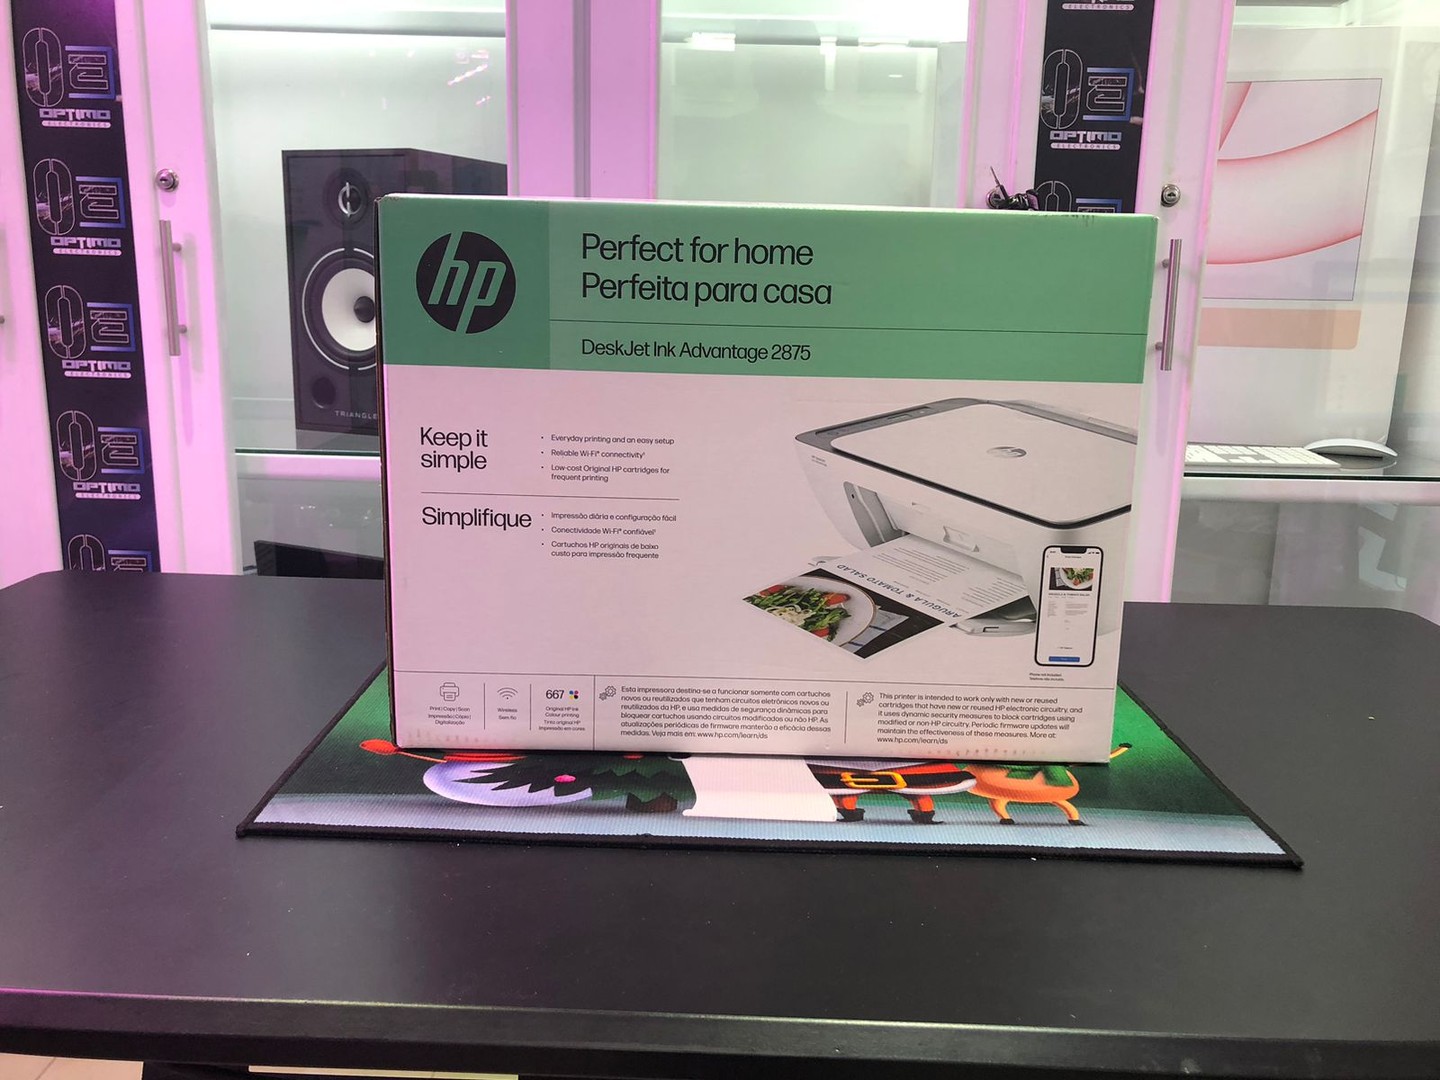 impresoras y scanners - Impresora Multifunción a wifi y Bluetooth HP 2875 Todo en 1, Nueva y Sellada 2